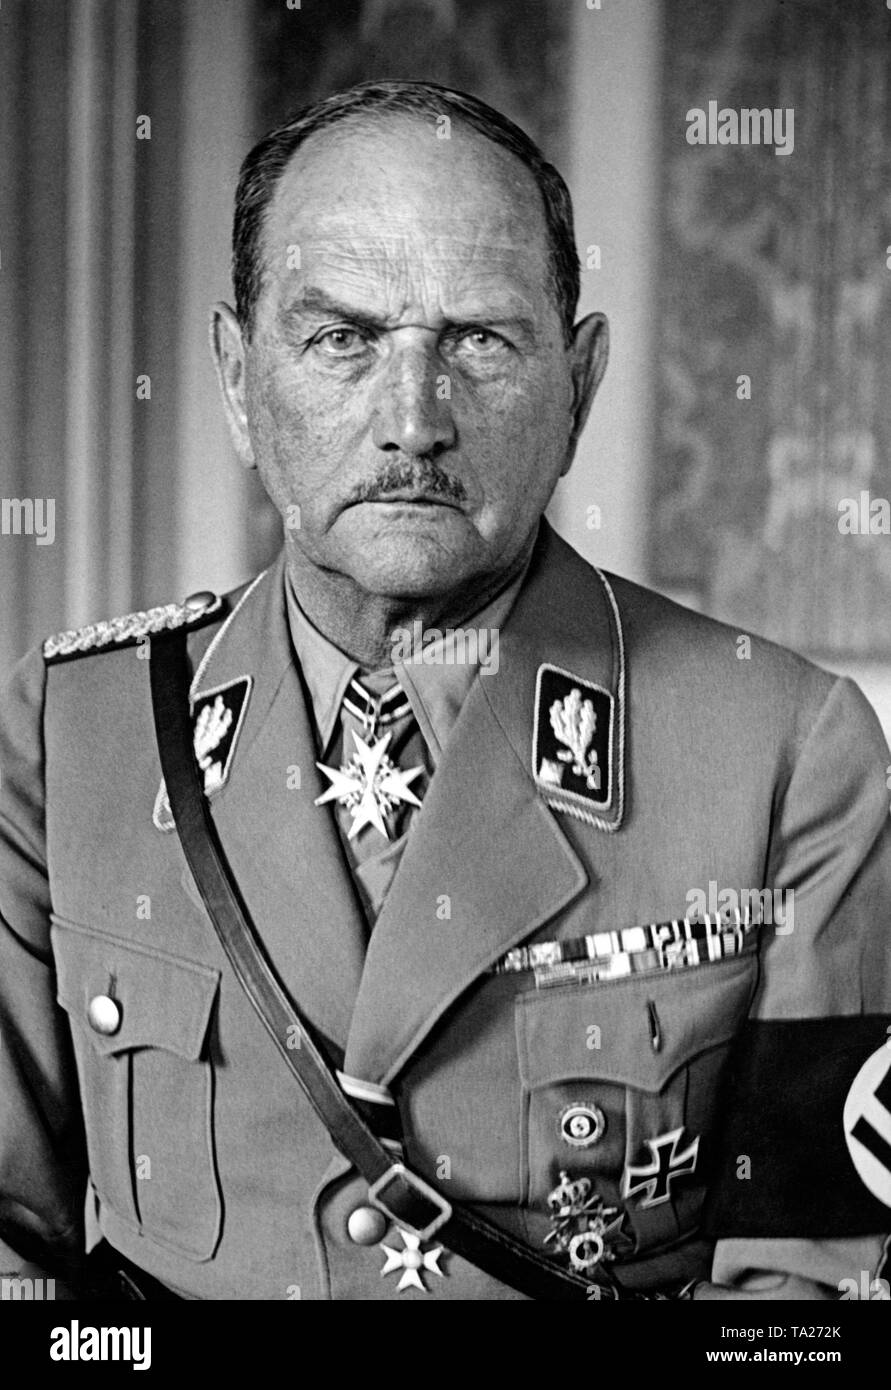 Dieses Foto ist ein Portrait des Reichsstattheater Bayern Franz Ritter v. Epp, General der Infanterie in SS-Uniform mit Hakenkreuz Armbinde. Adolf Hitler gewährte ihm dieser Titel der allgemeinen durch Dekret am 25. Juli 1935. Stockfoto